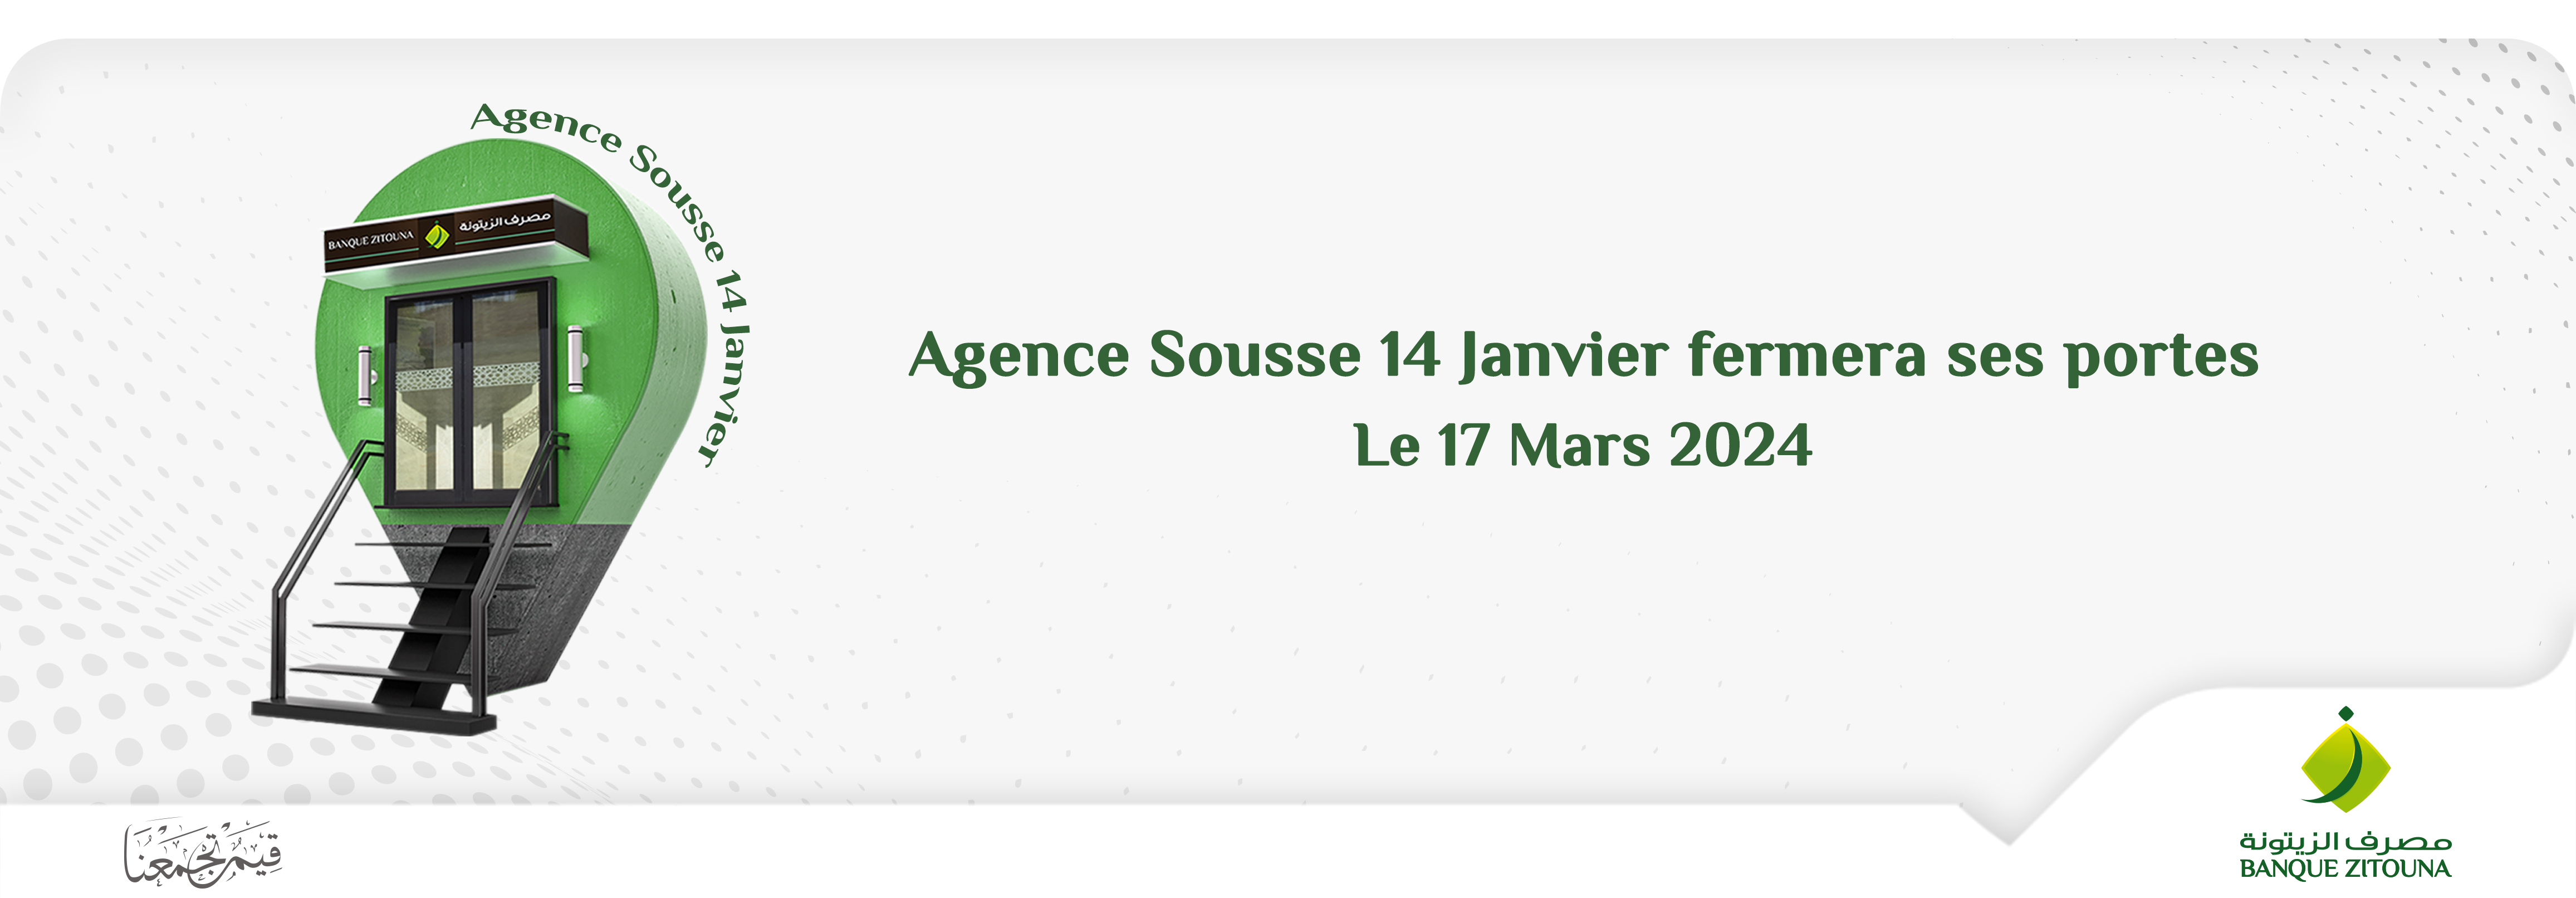 Transfert Temporaire: Agence Banque Zitouna de Sousse 14 Janvier vers Sousse Khzema